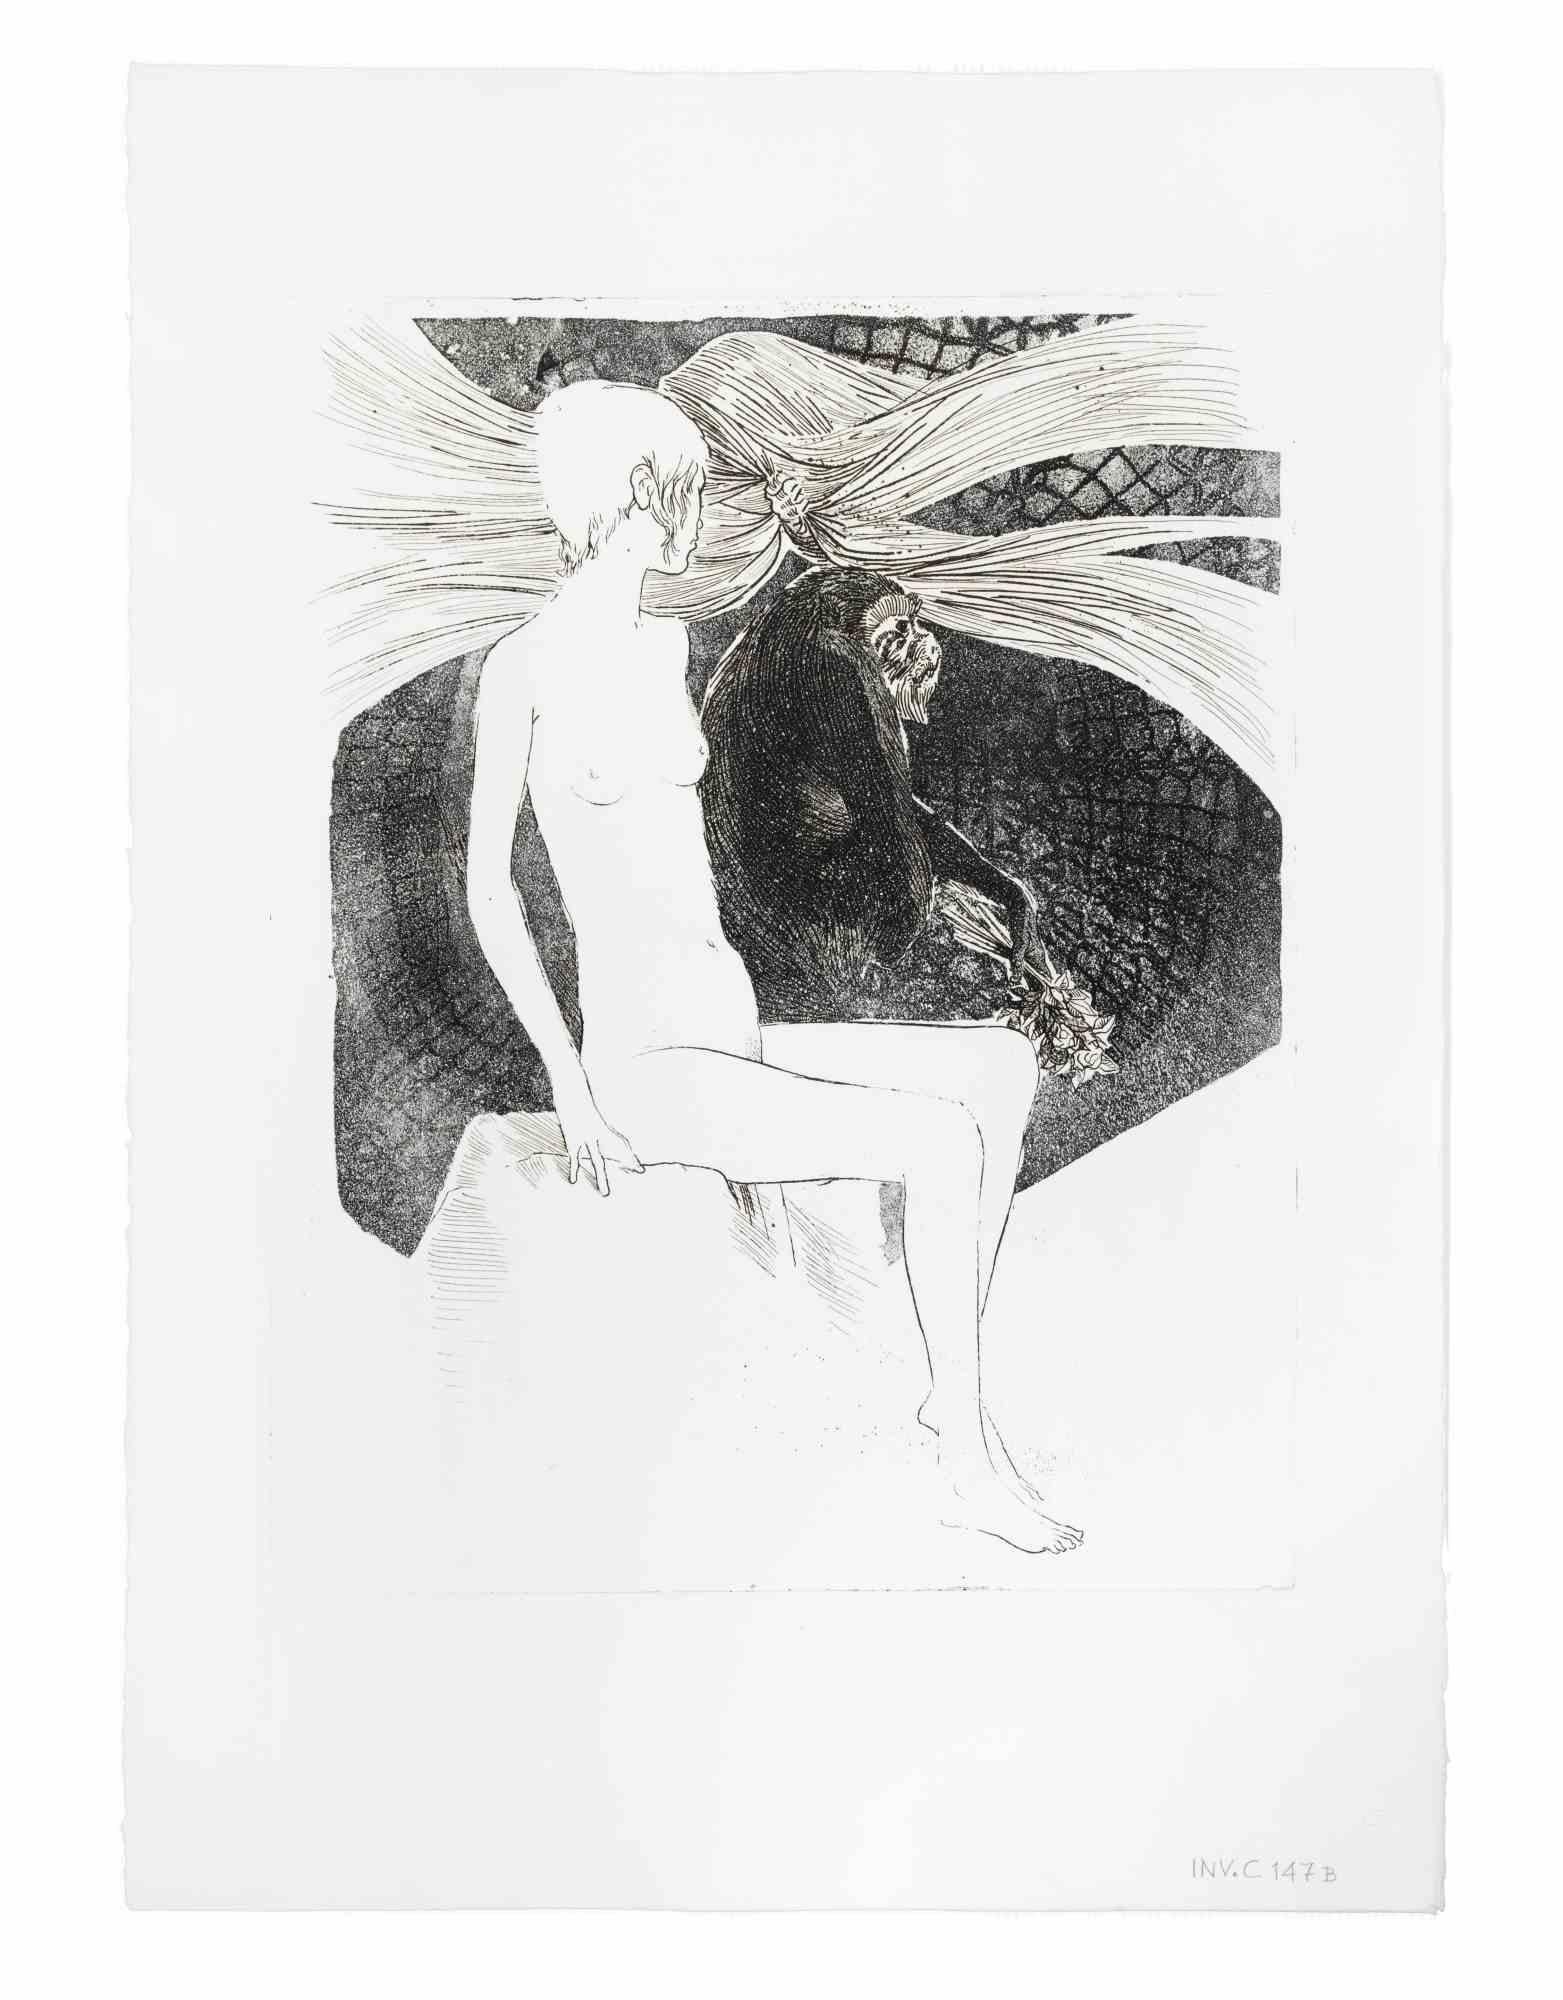 Sibilla Sibilla (Sibylle) ist ein Kunstwerk des italienischen Künstlers AM Contemporary  Leo Guida (1992 - 2017) in 1975s.

Schwarz-Weiß-Radierung auf Papier.

Guter Zustand

Leo Guida  (1992 - 2017). Mit seinem Gespür für aktuelle Themen,